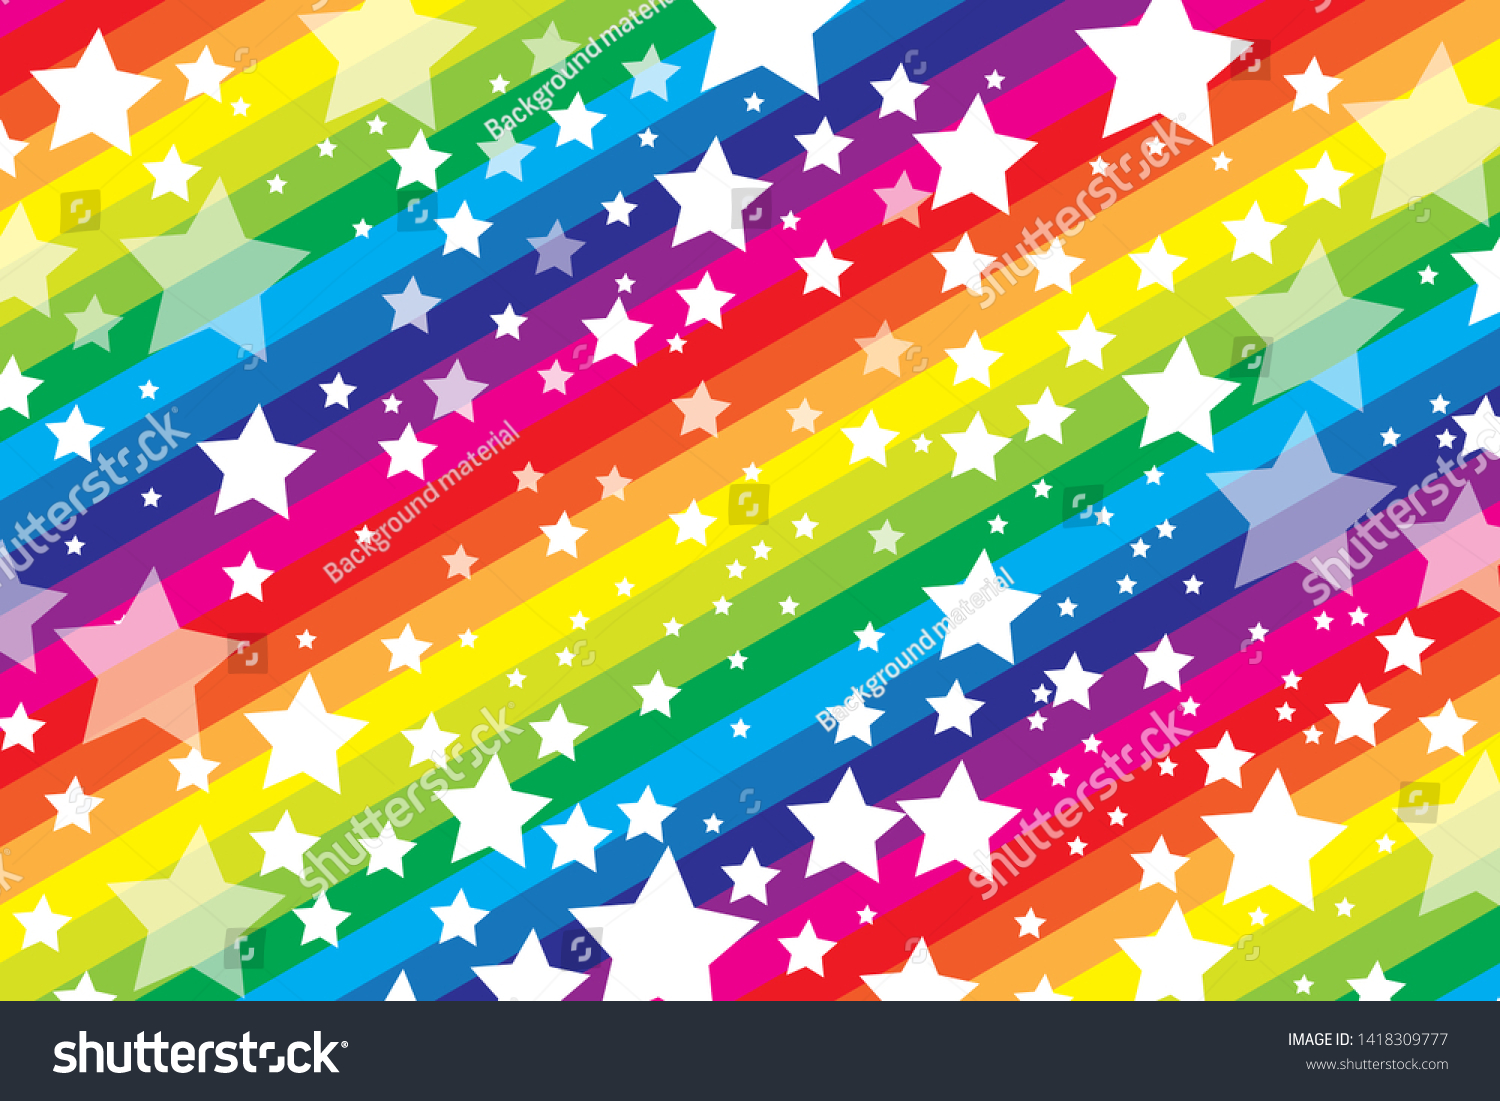 Rainbow Color Louis Vuitton Design Wallpaper Photograph · Creative Fabrica